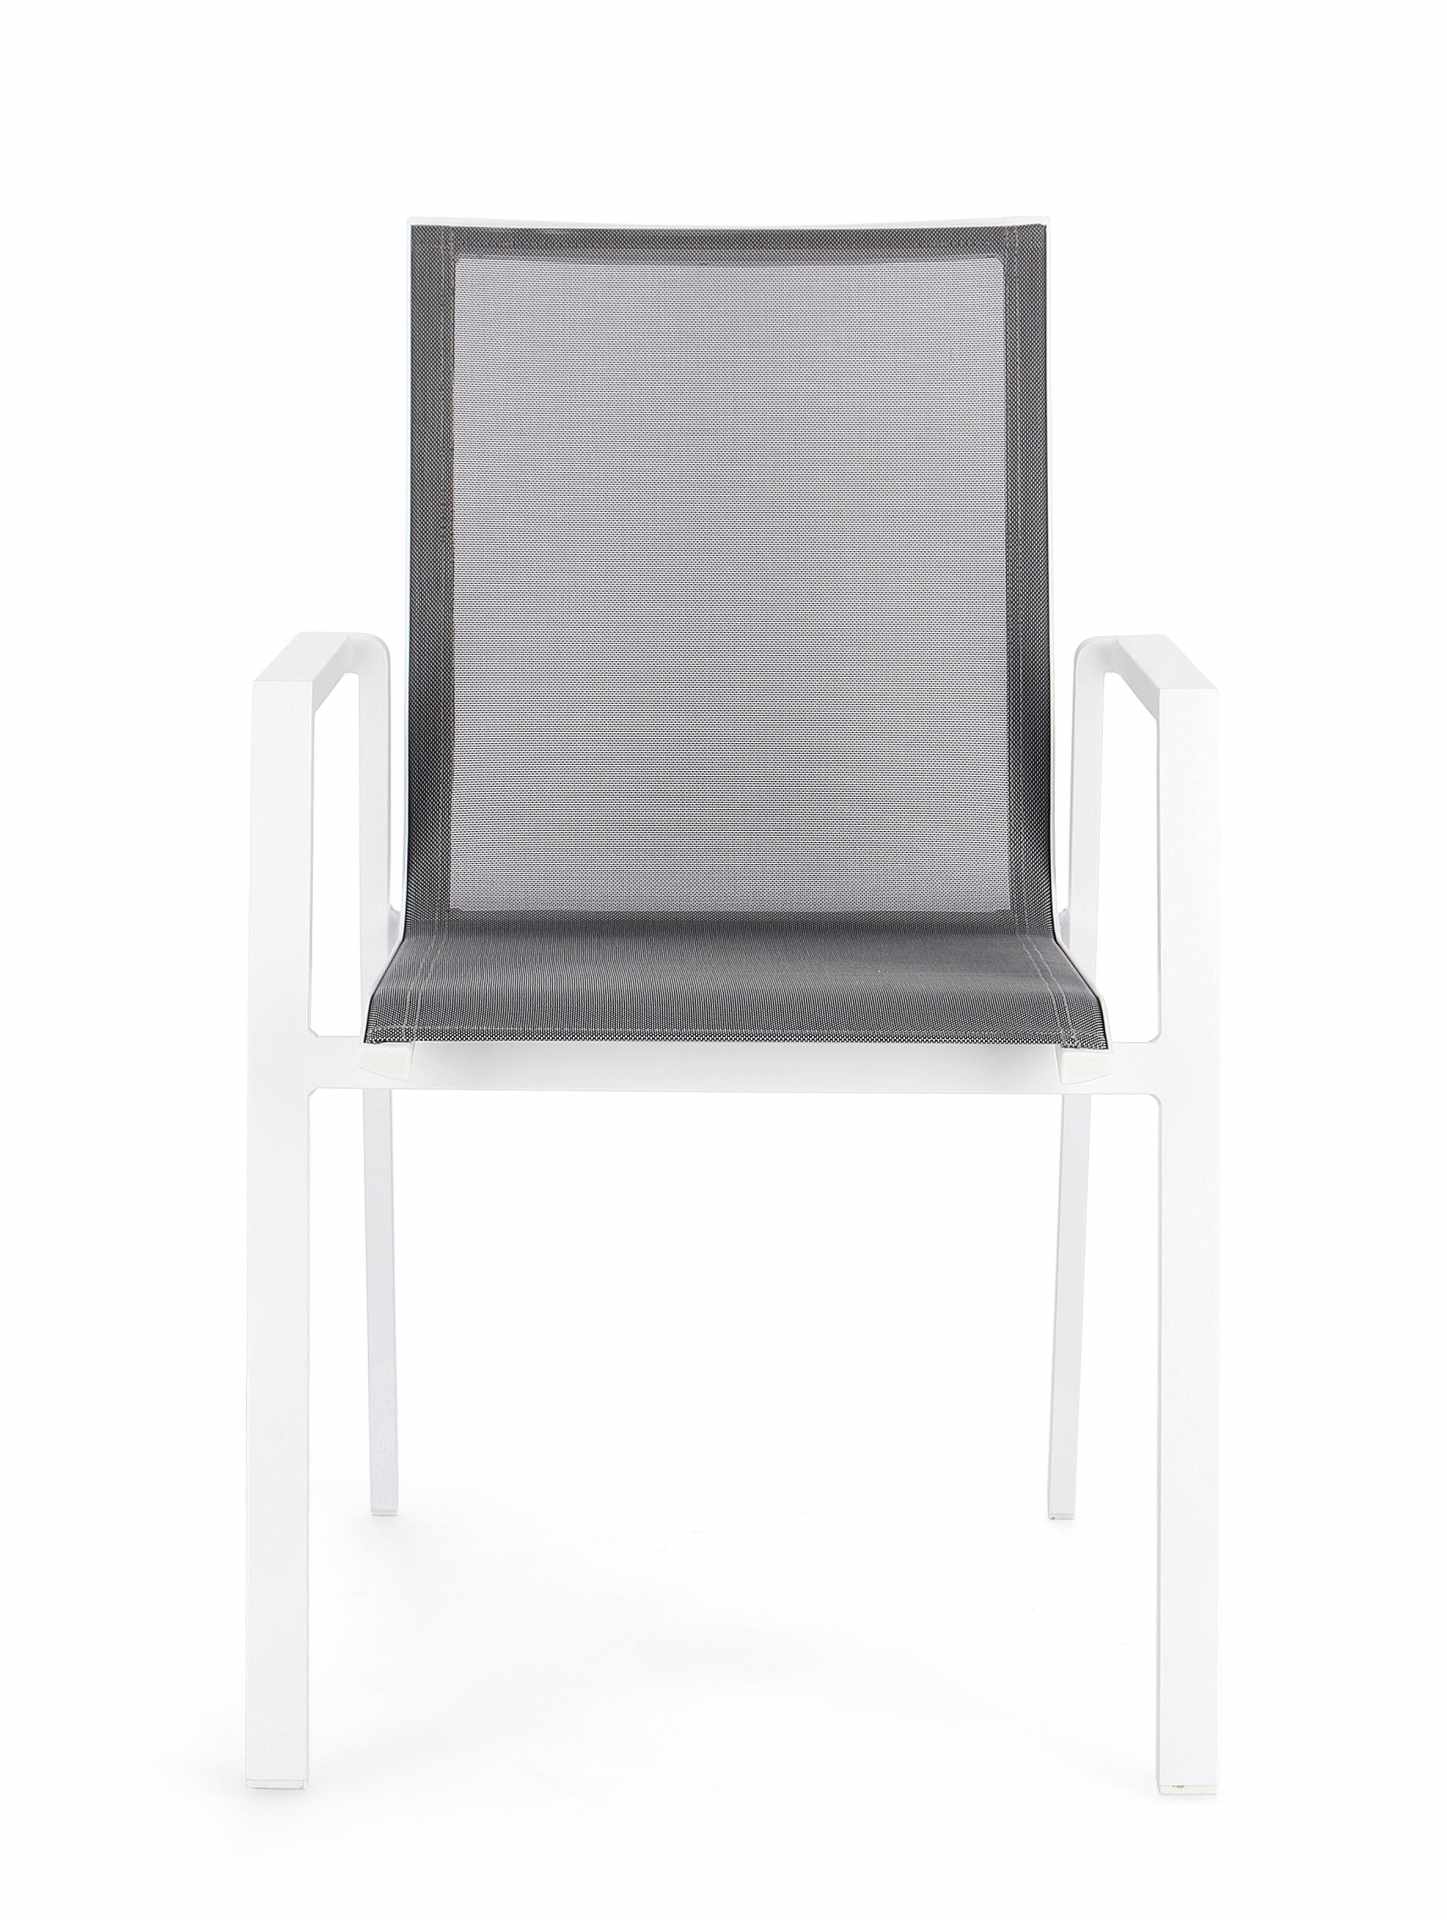 Der Gartenstuhl Krion überzeugt mit seinem modernen Design. Gefertigt wurde er aus Textilene, welche einen grauen Farbton besitzt. Das Gestell ist aus Aluminium und hat auch eine weiße Farbe. Der Stuhl verfügt über eine Sitzhöhe von 45 cm und ist für den 